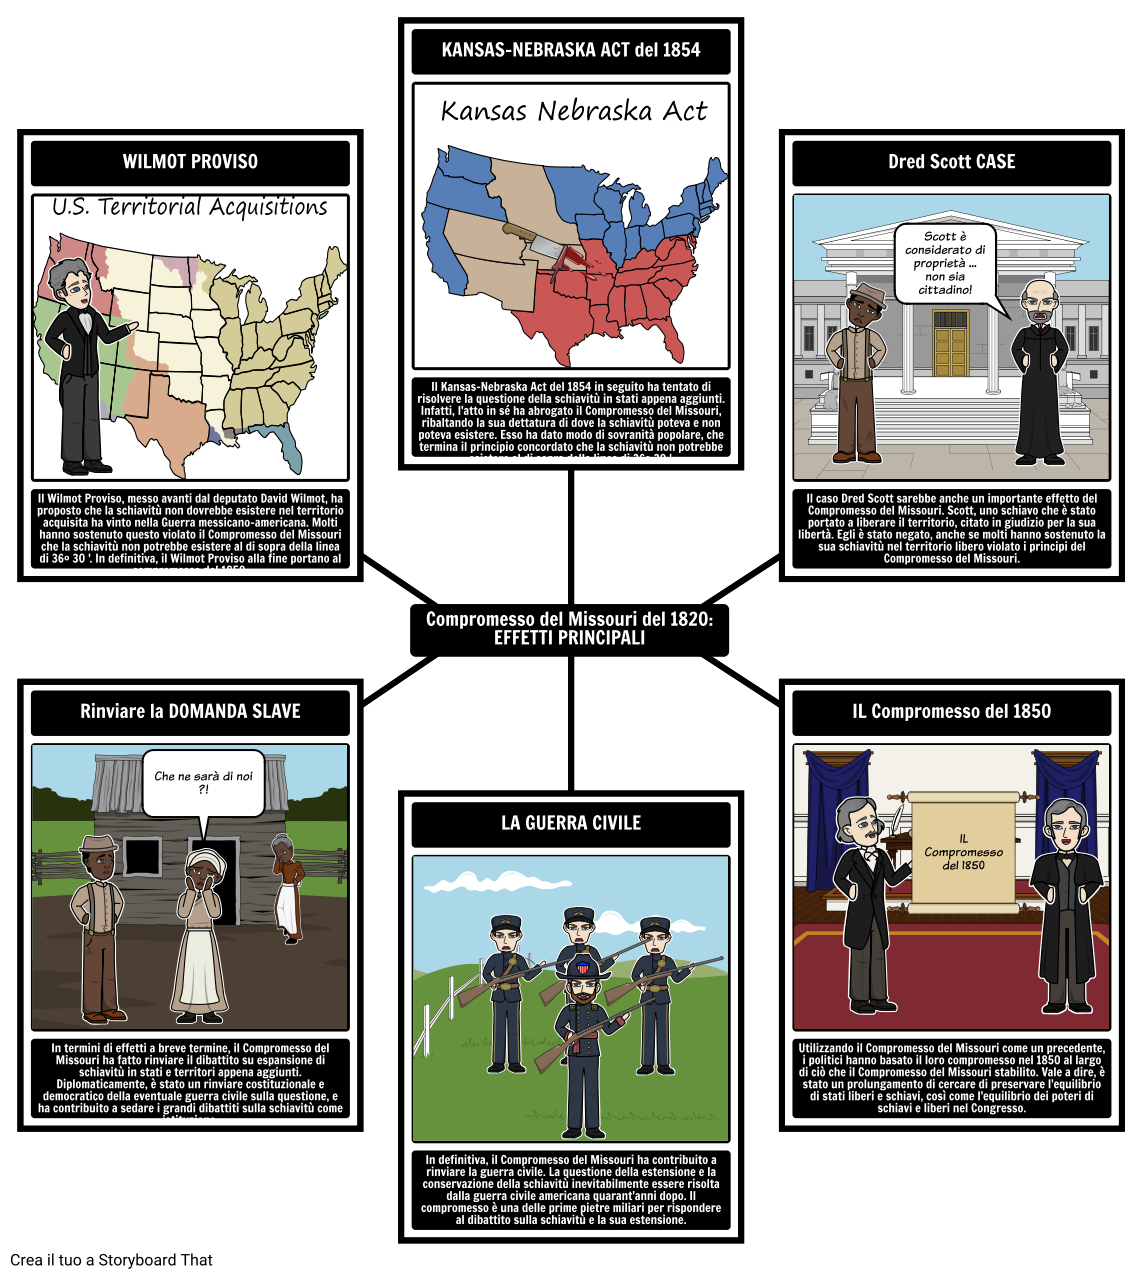 Il Compromesso del Missouri del 1820 - Effetti principali